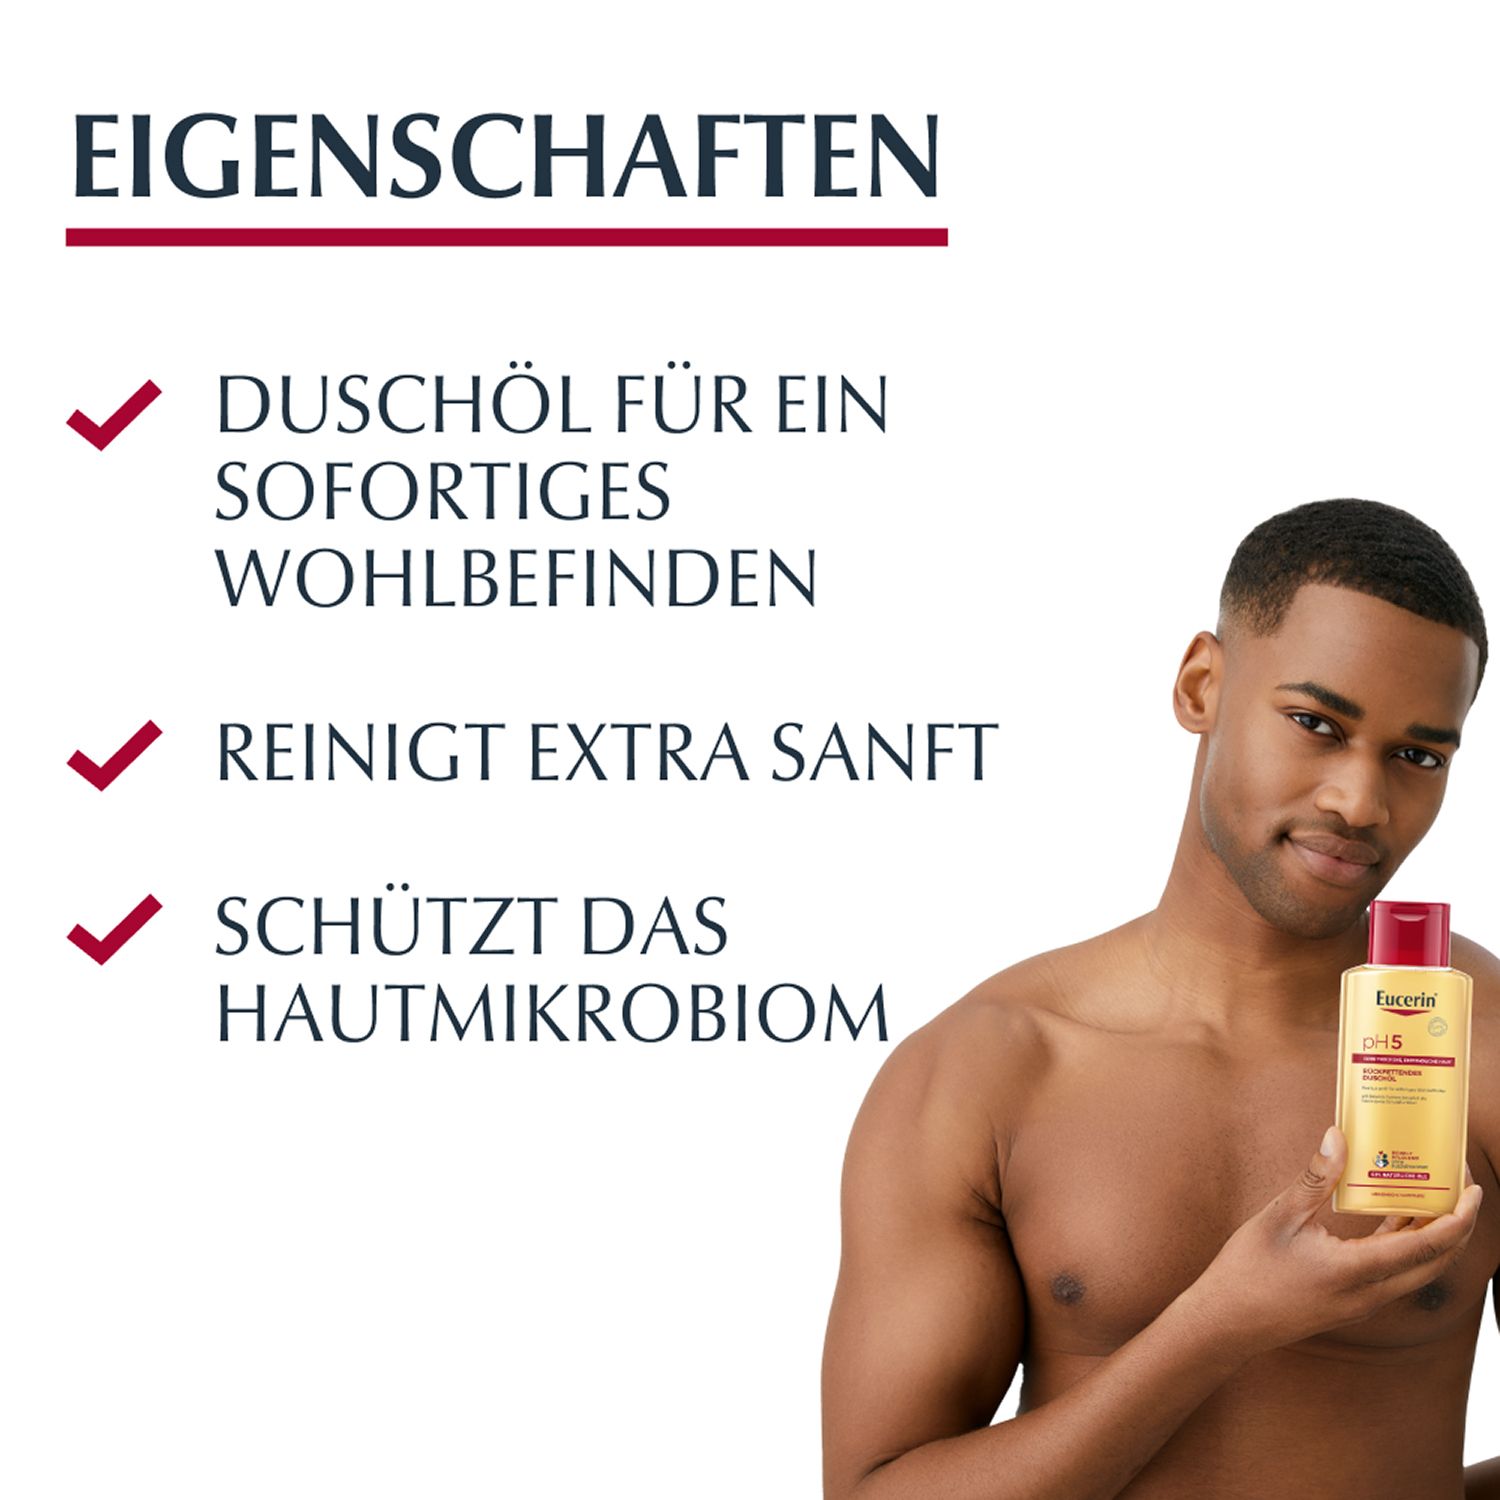 Eucerin® pH5 Duschöl – Rückfettende Reinigung für trockene, strapazierte Haut mit natürlichen Pflegeölen - Jetzt 20% sparen mit Code "sommer20"